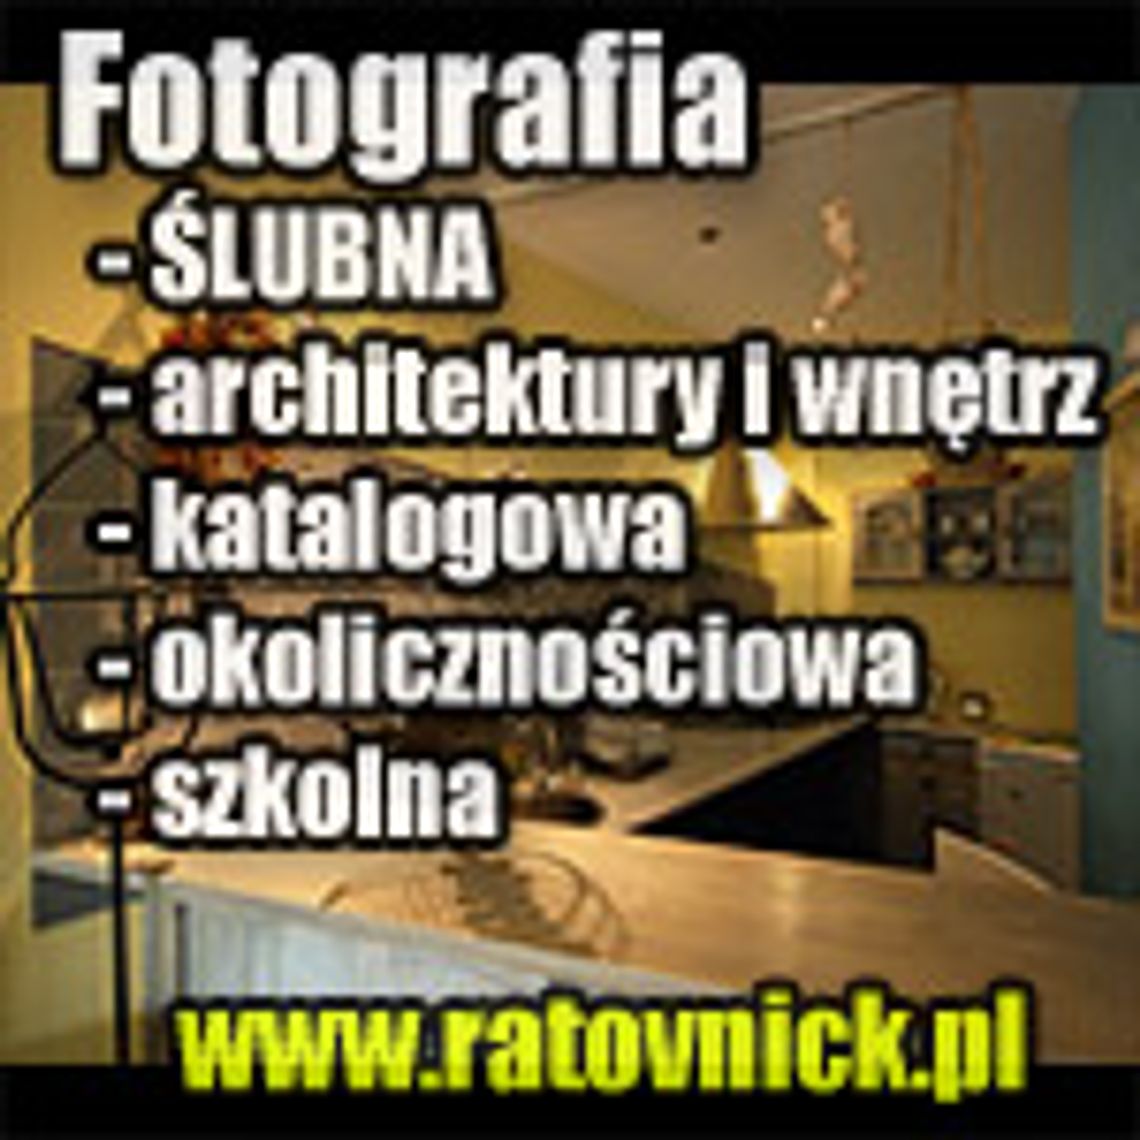 FOTOGRAF - fotografia REKLAMOWA, fotografia ŚLUBNA, fotografia SZKOLNA i inne